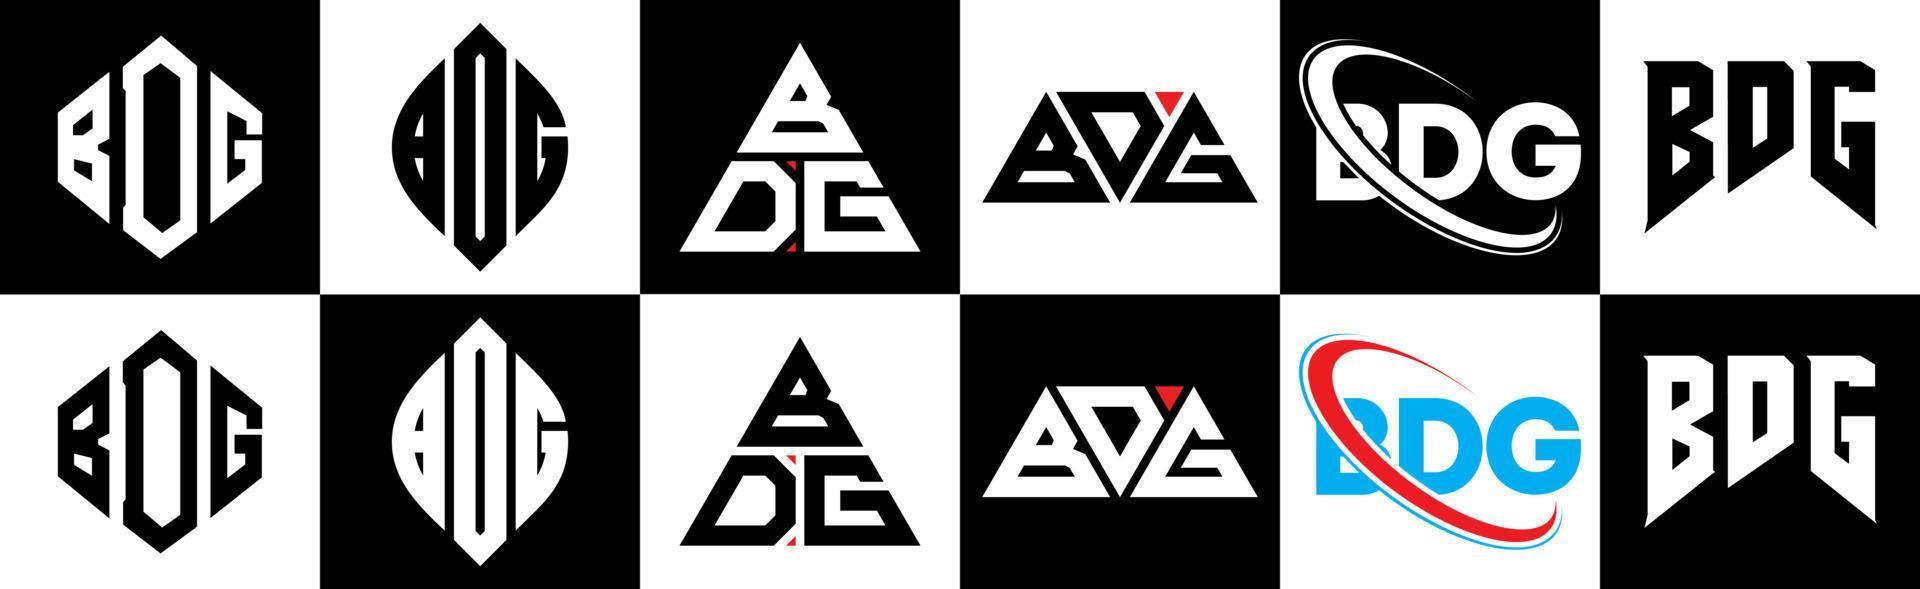 Bdg-Buchstaben-Logo-Design in sechs Stilen. bdg polygon, kreis, dreieck, hexagon, flacher und einfacher stil mit schwarz-weißem buchstabenlogo in einer zeichenfläche. bdg minimalistisches und klassisches Logo vektor